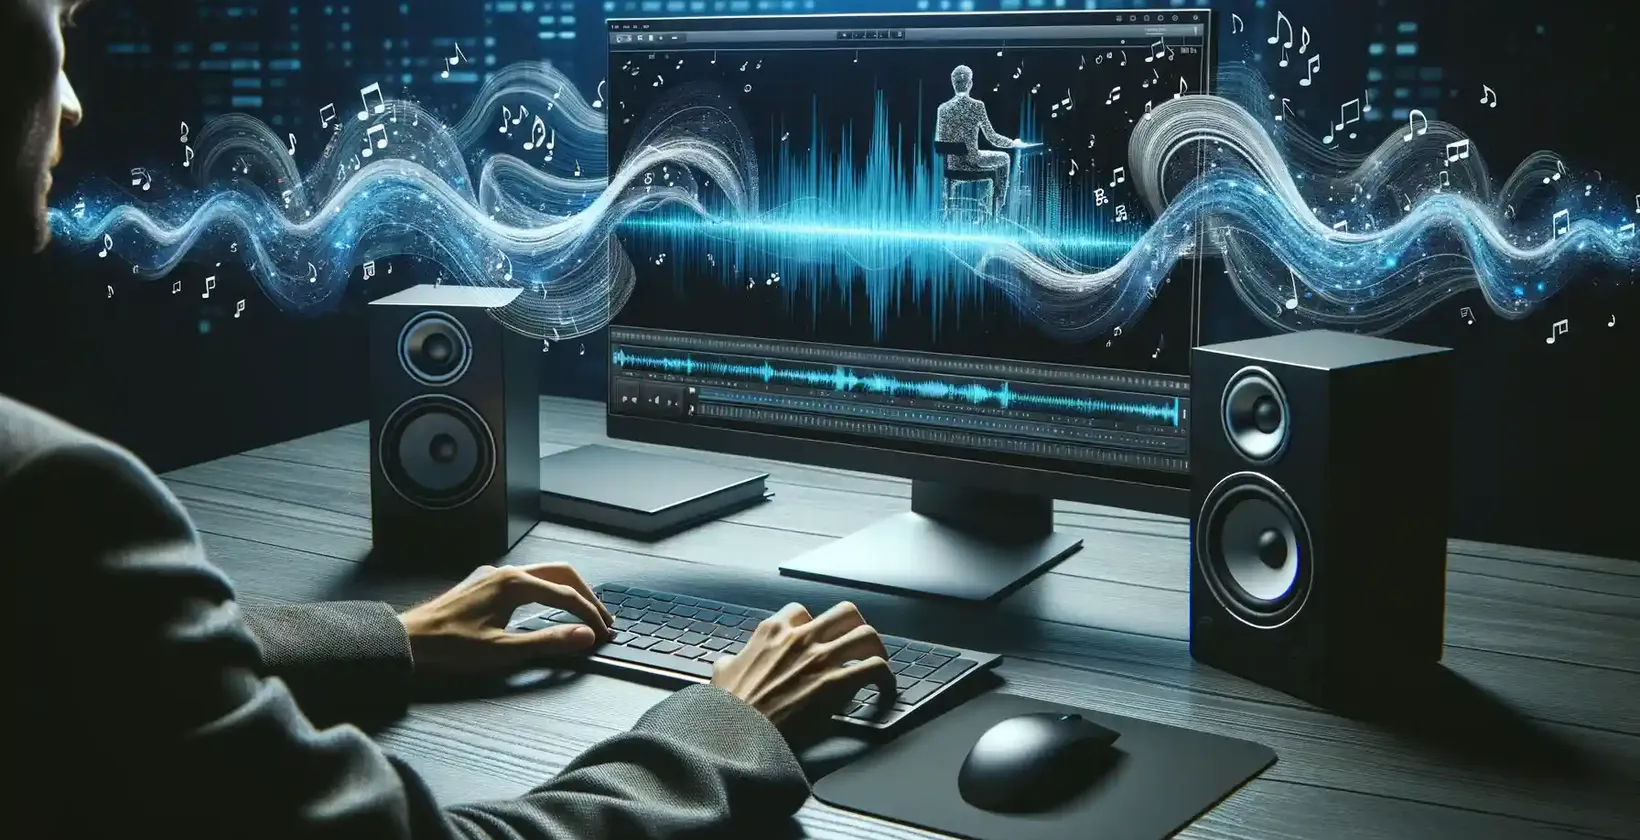 Moderni radni prostor osvijetljen digitalnim sučeljem, koji prikazuje čovjeka zadubljenog u uređivanje zvuka.